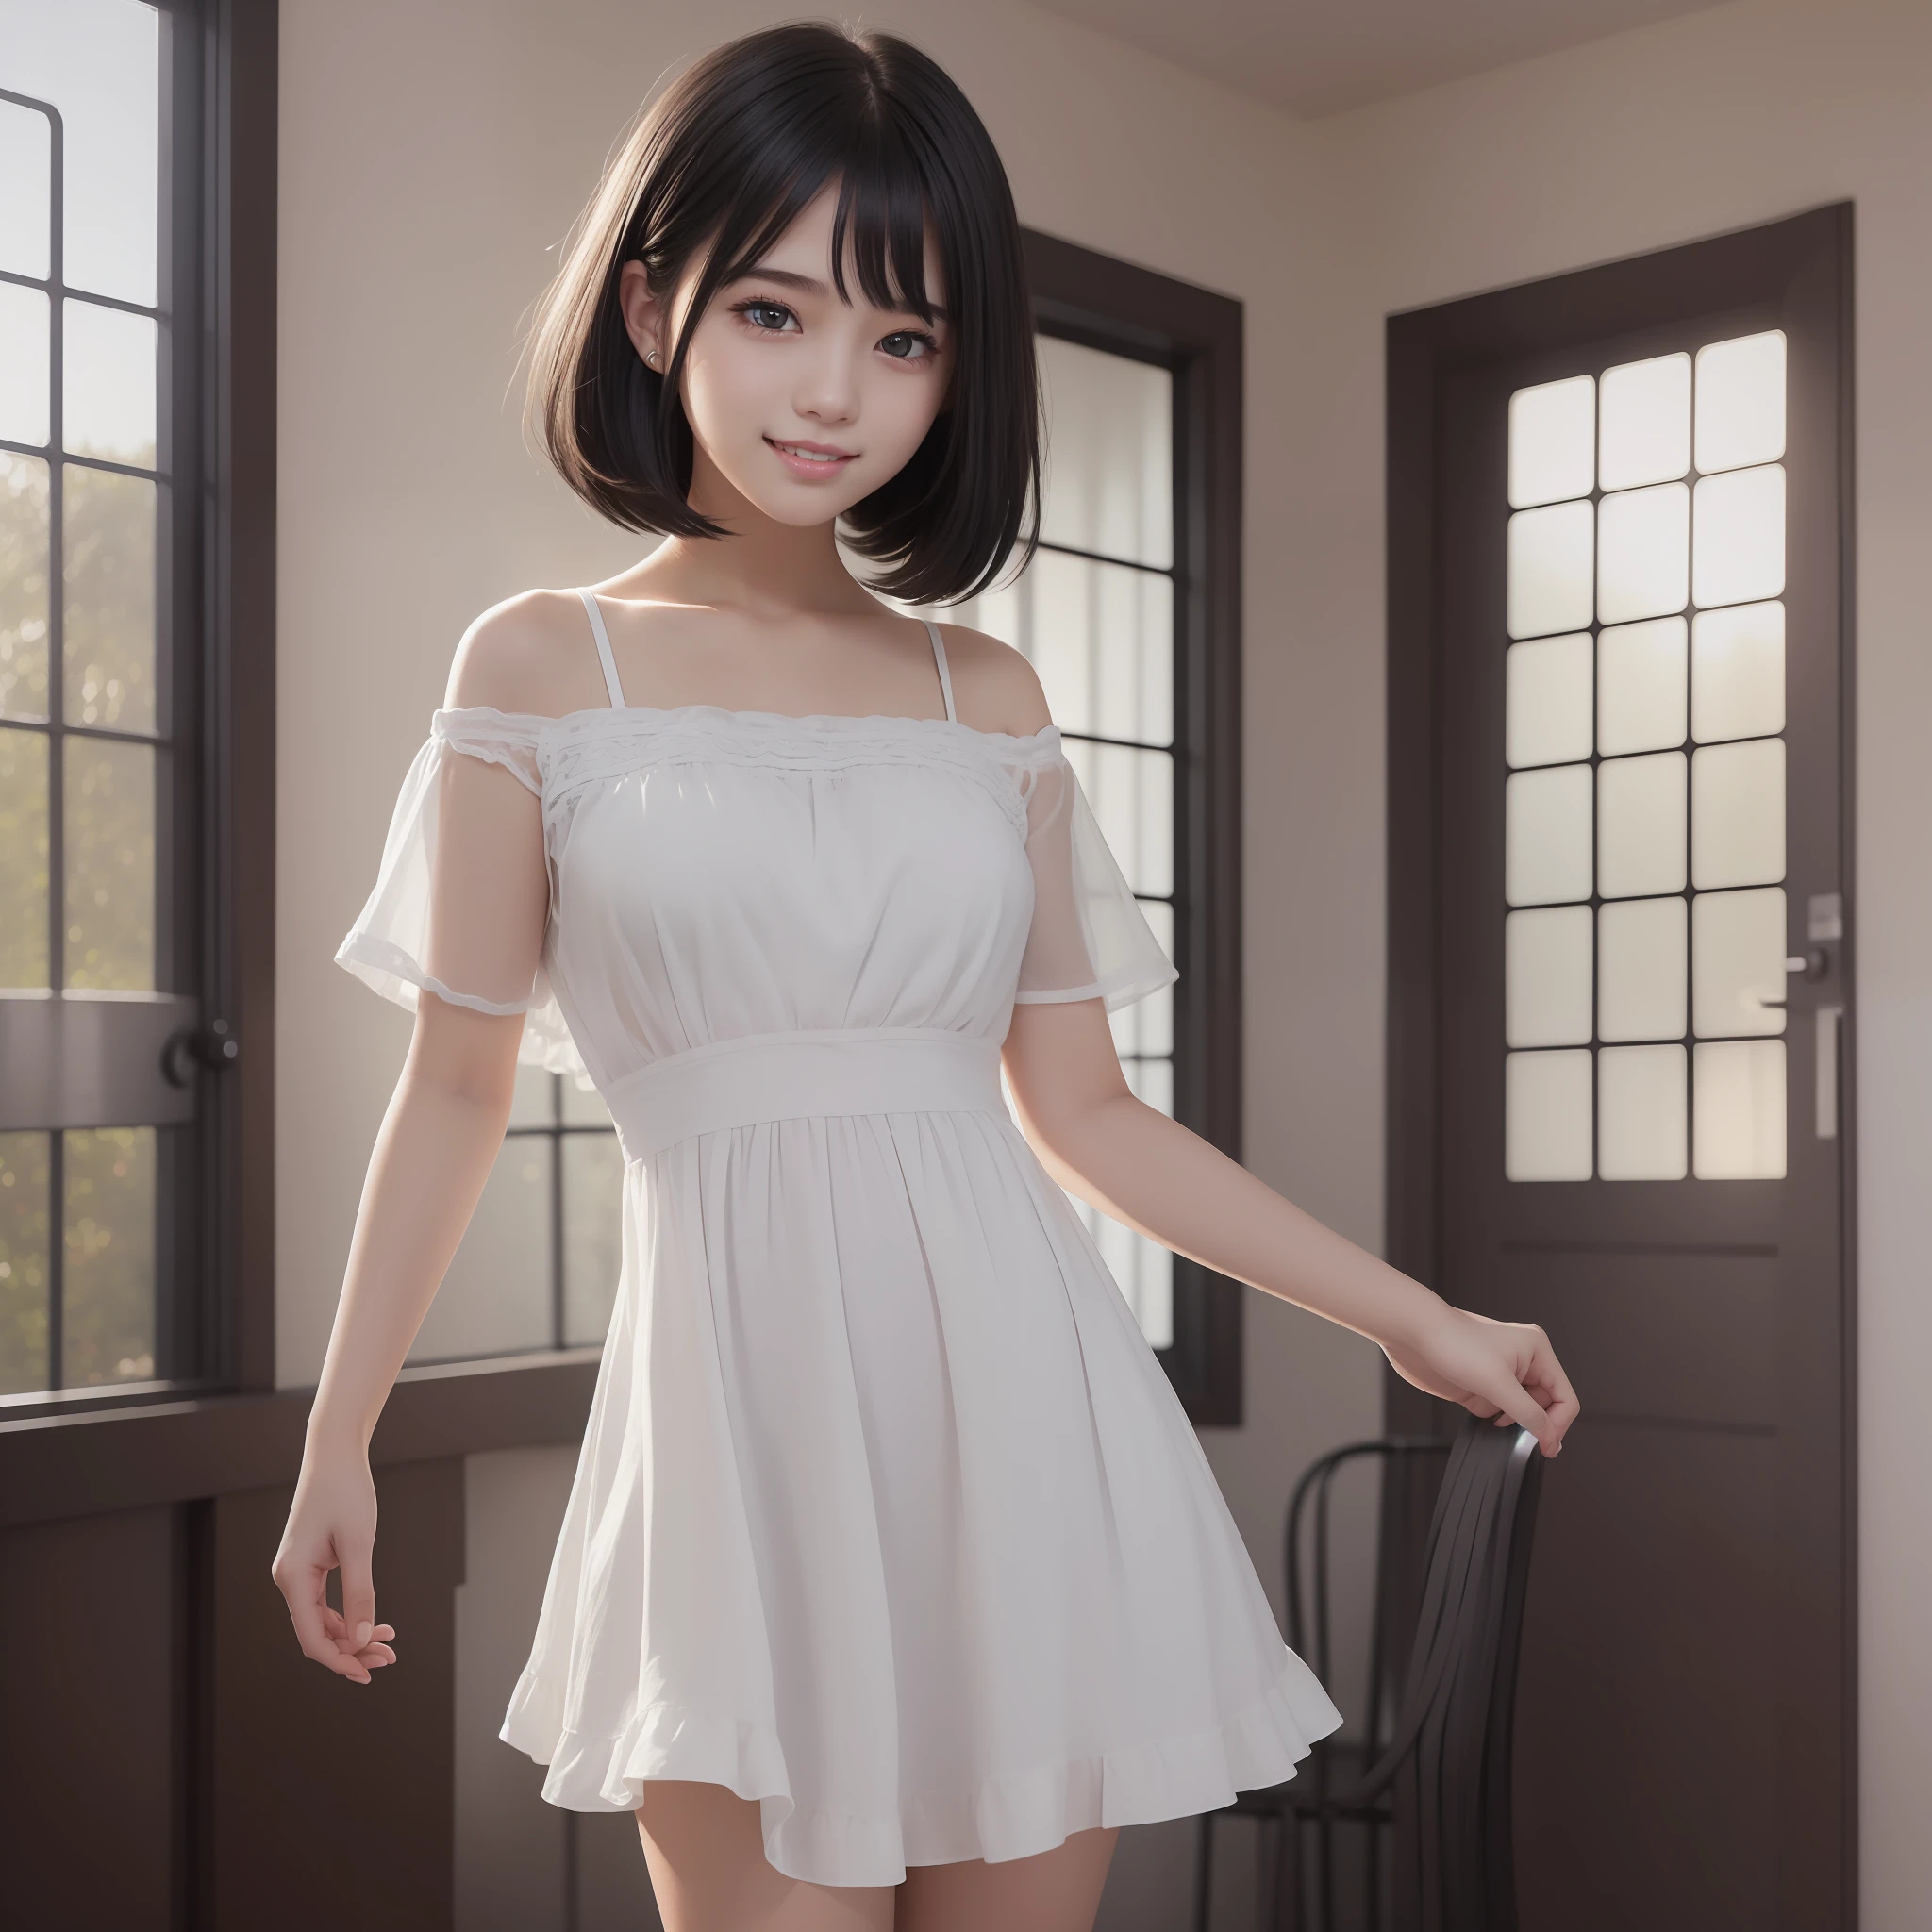 최고 품질의 CG 일러스트레이션을 가진 아름다운 십대 소녀의 이미지。고해상도、아름다운 디테일、고요한 분위기。(((검은 머리 보브 헤어)))、입을 다물고 웃는 귀여운 미소。하얀 빛 반팔 드레스를 입은 소녀가 방에 서 있다。